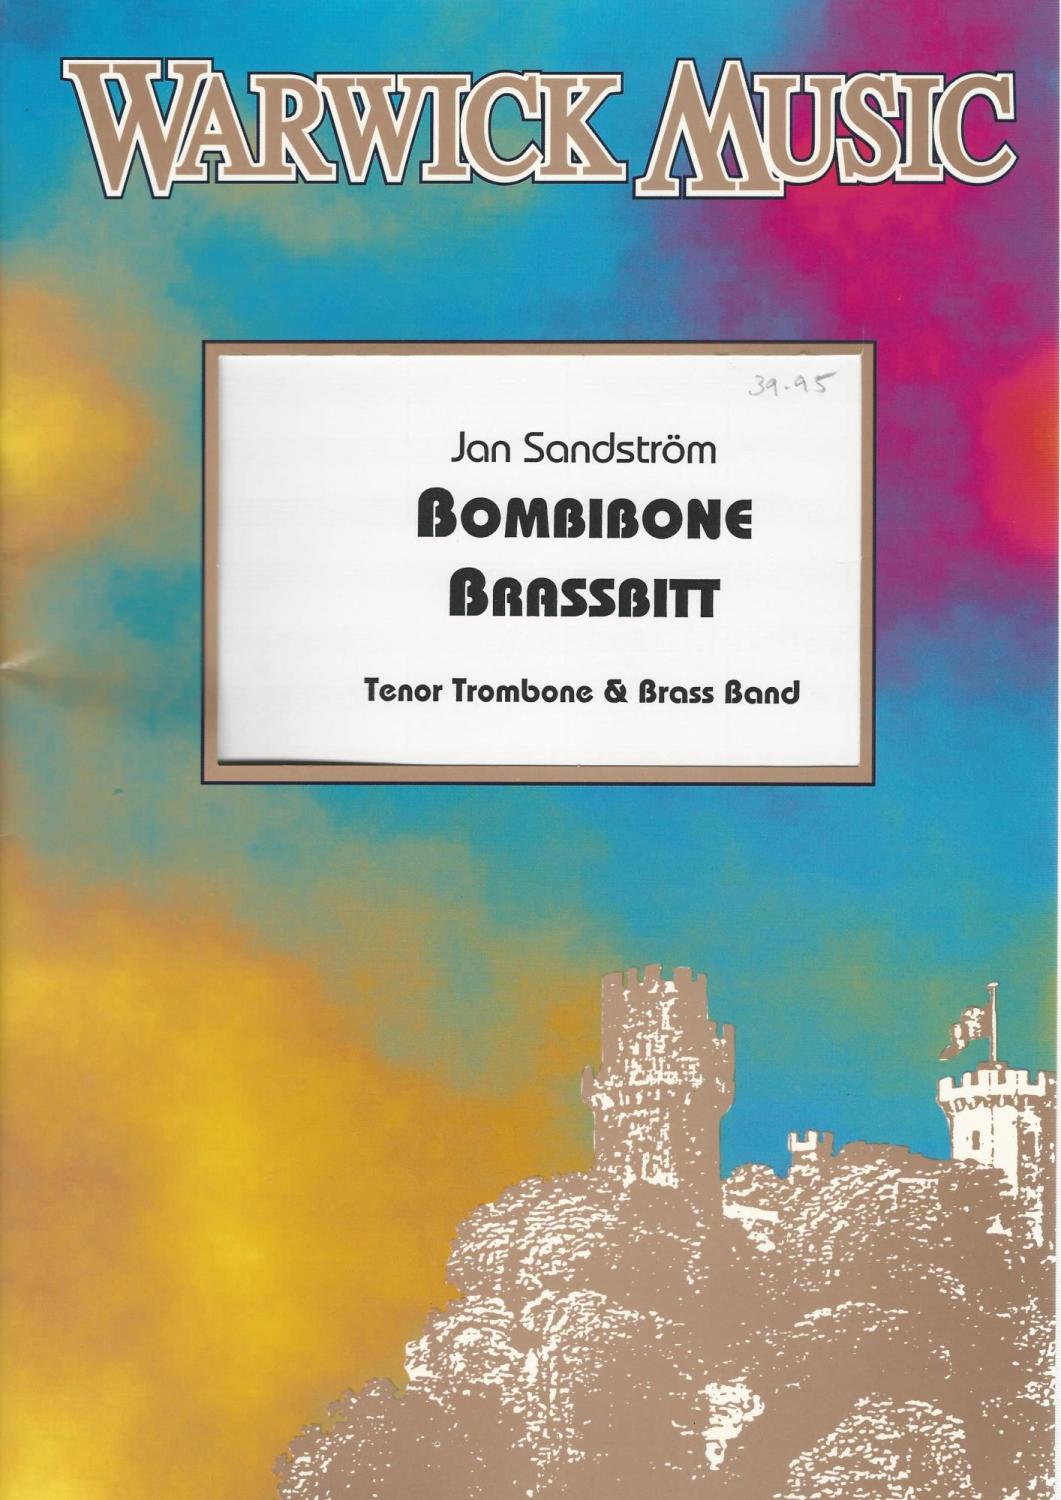 Bombibone Brassbitt for Trombone and Brass Band - Jan Sandstrom arr. Stephe